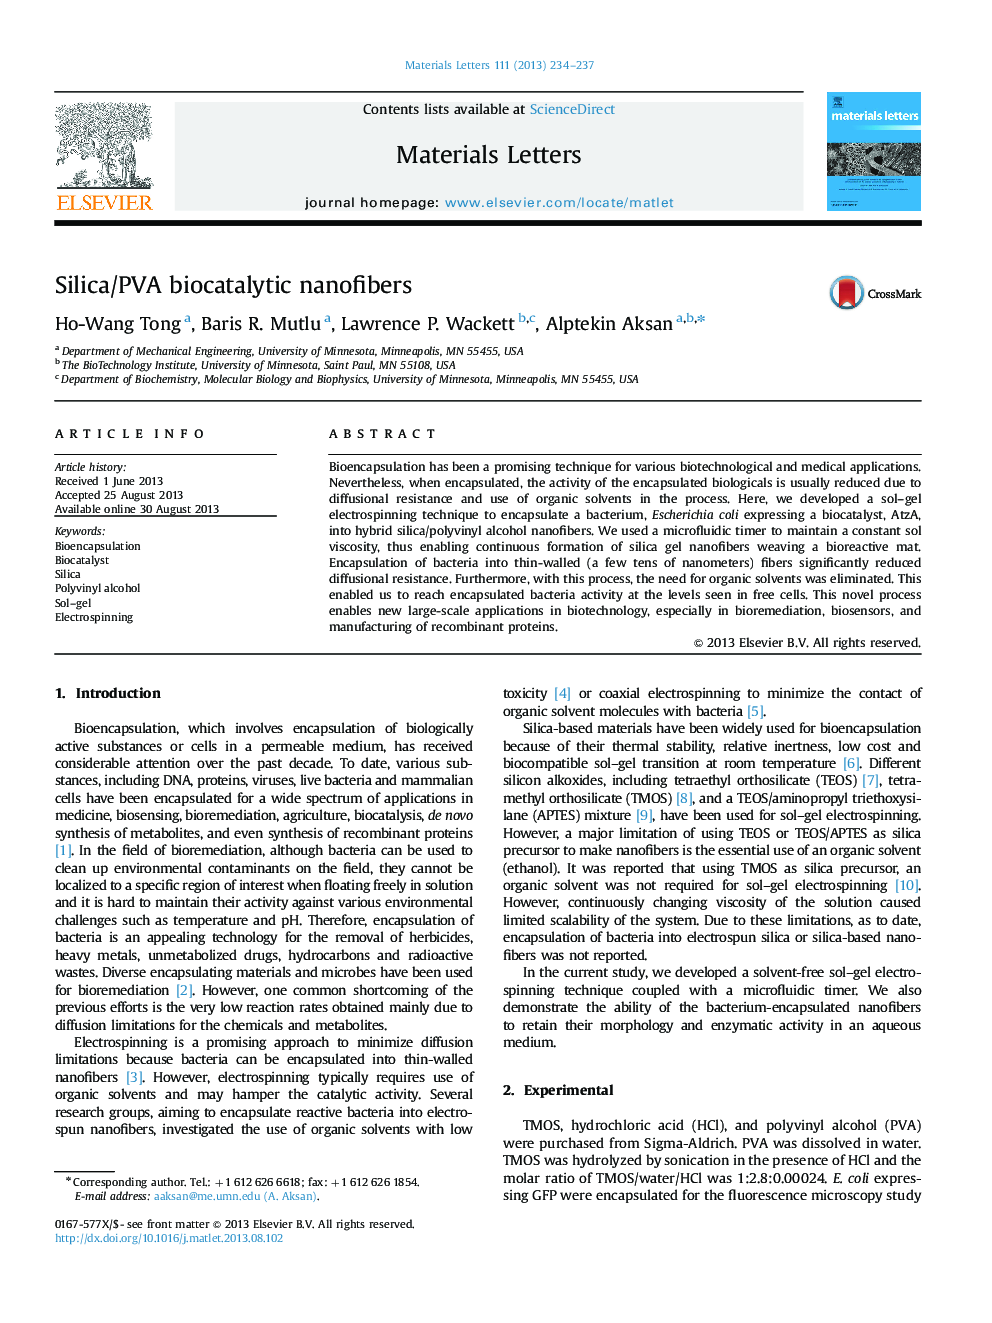 Silica/PVA biocatalytic nanofibers